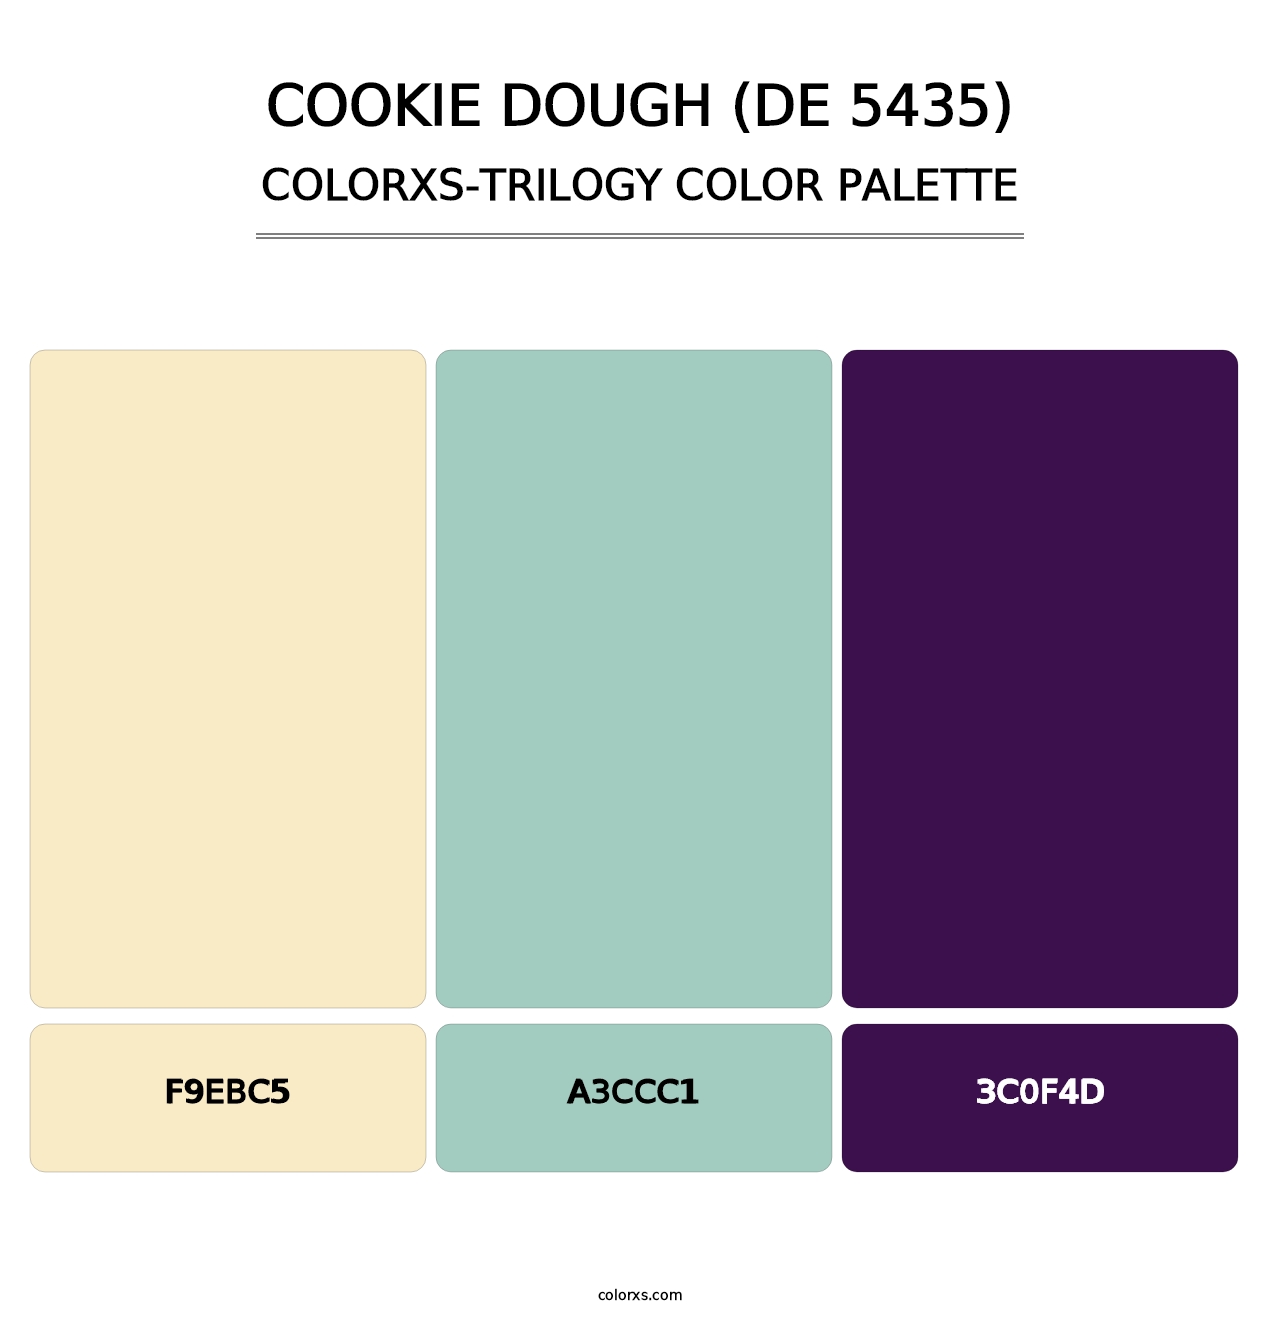 Cookie Dough (DE 5435) - Colorxs Trilogy Palette